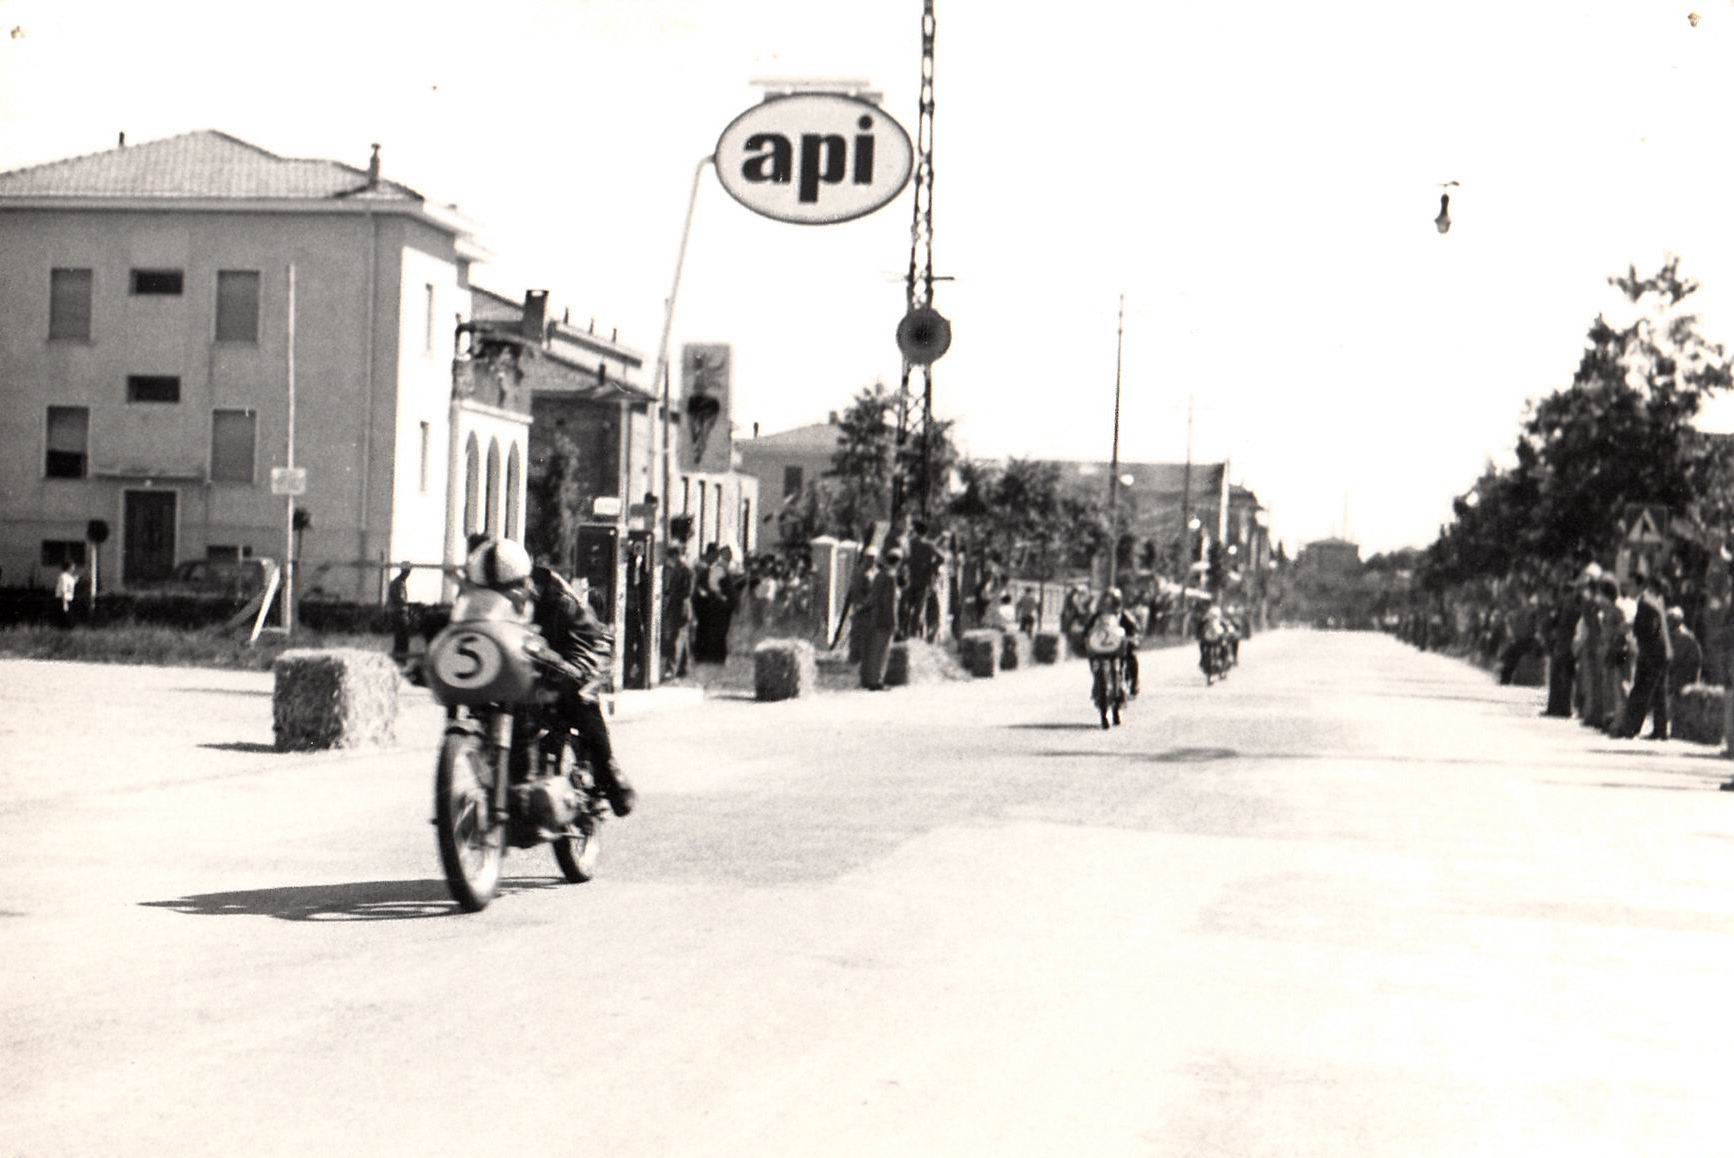 1956-circuito-di-Carpi-08-col-N-2-Giorgio-Sgarbi-viale-N-Biondo-API-casa-dei-rancan-via-vivaldi